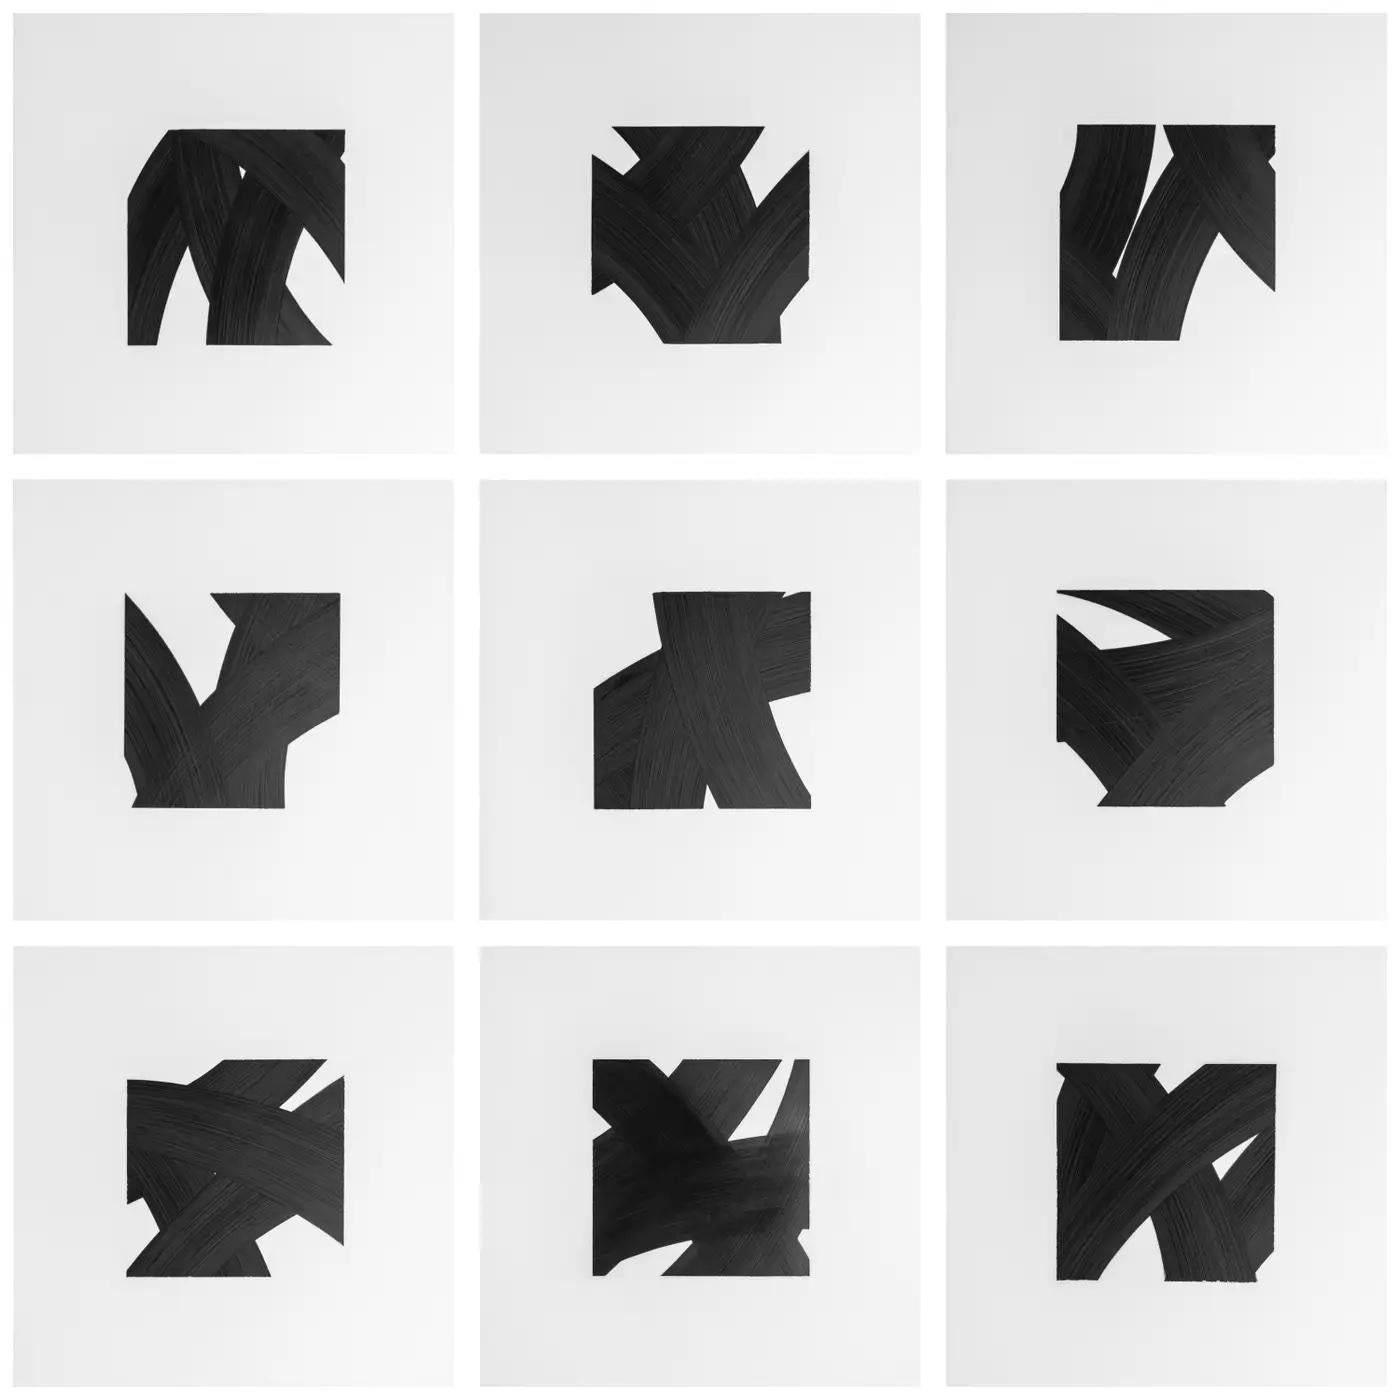 Les dessins à l'encre noire sur Mylar de l'artiste new-yorkais contemporain Patrick Carrara ont été créés en 2016 - 2017. Il s'agit de sa dernière série Appearance, qu'il a commencée il y a dix ans et qui progresse également par numéros. Il utilise